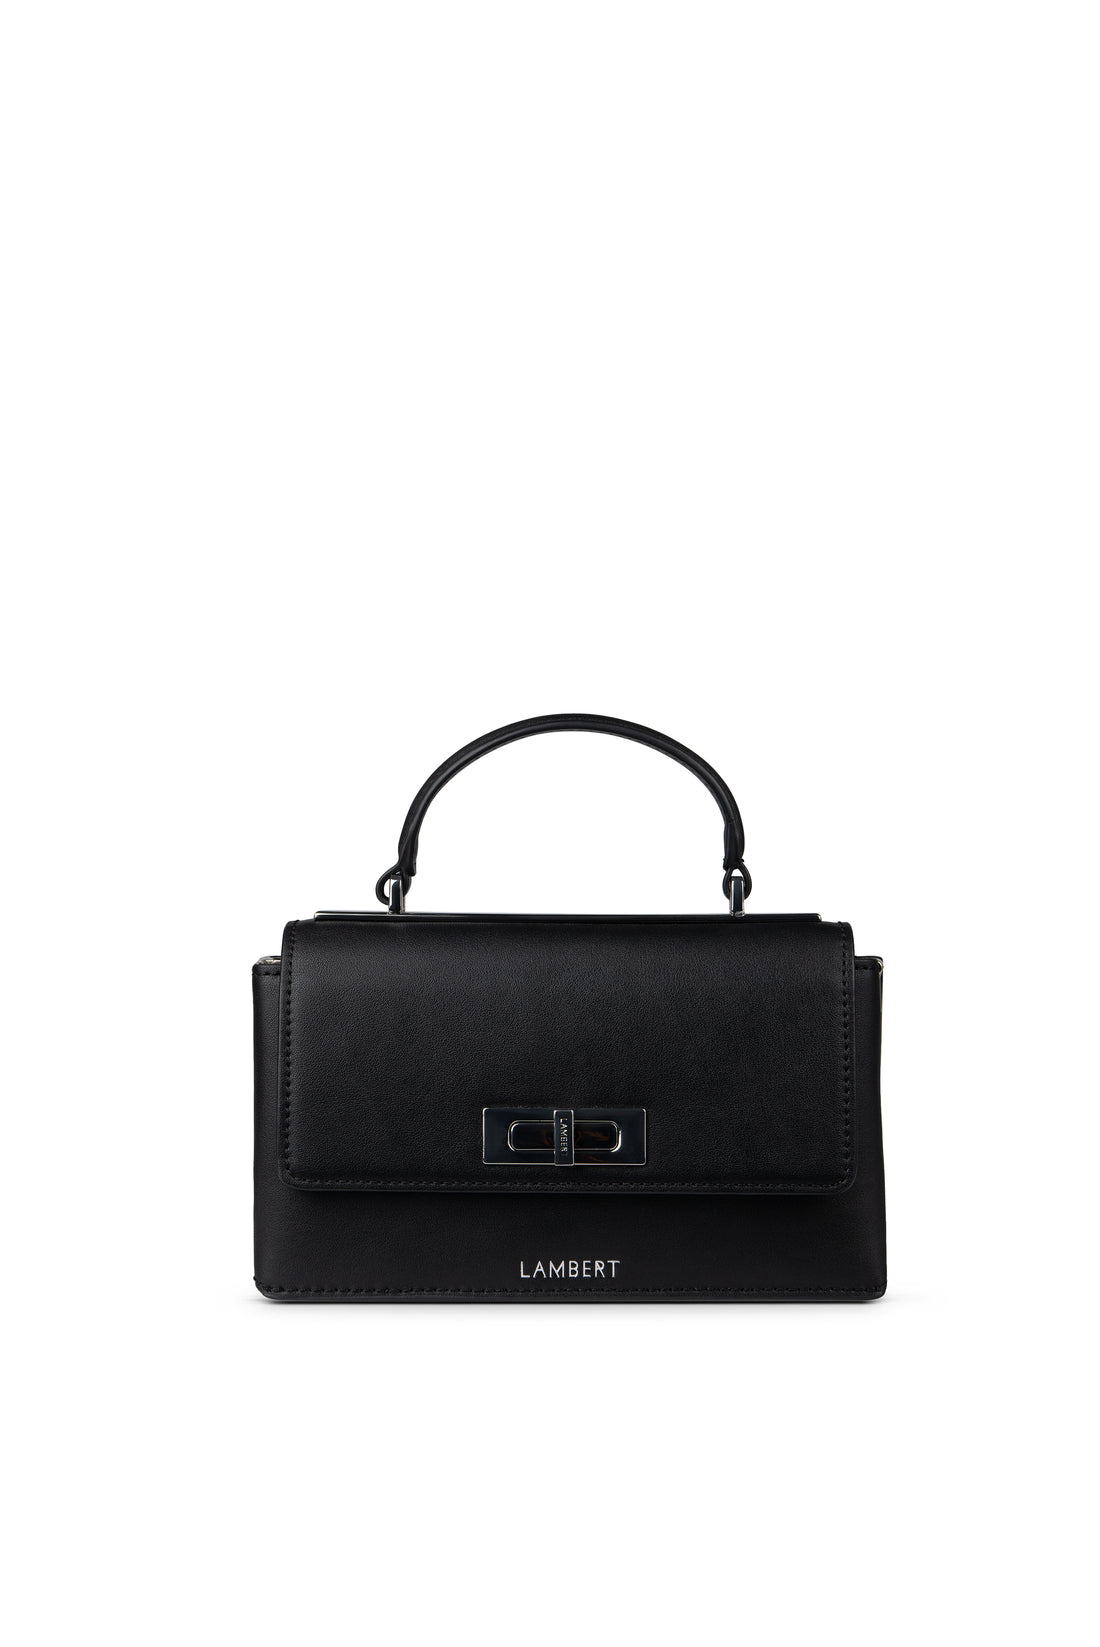 Handbag - Simone (black)